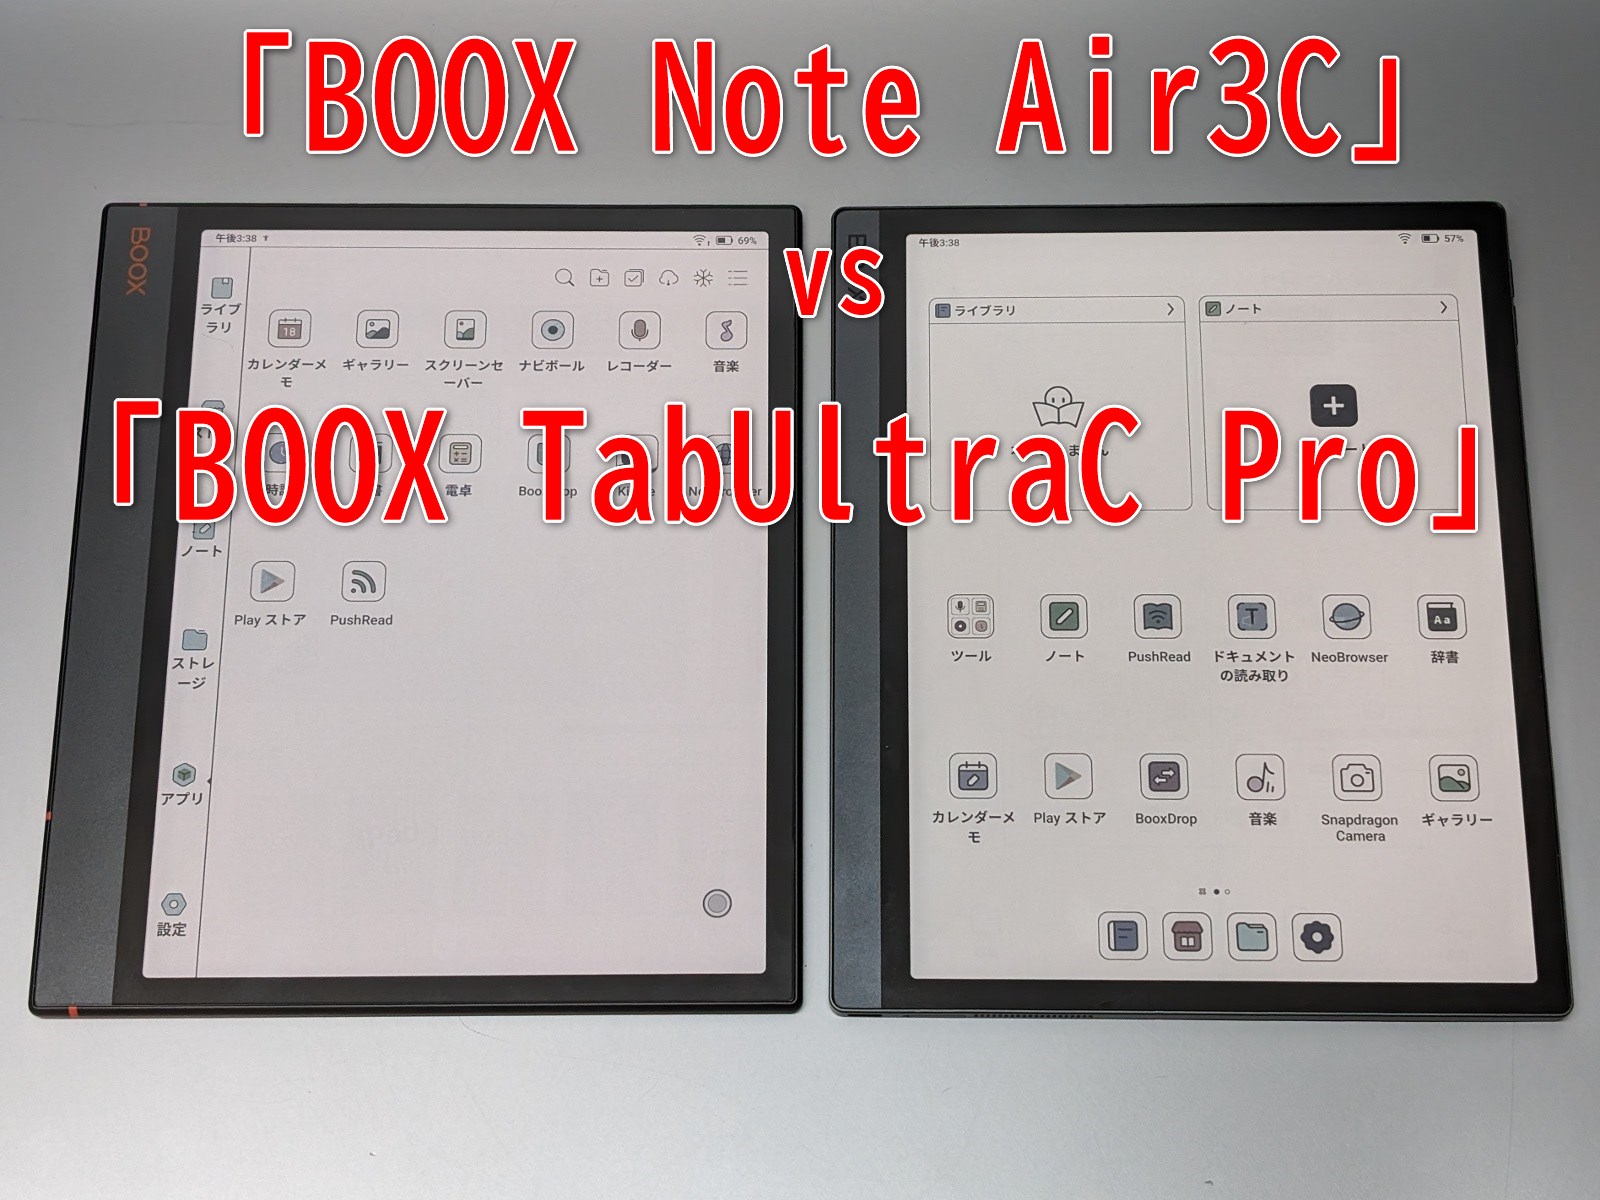 カラー化された10型電子ペーパータブレット「BOOX Note Air3 C」 - Impress Watch